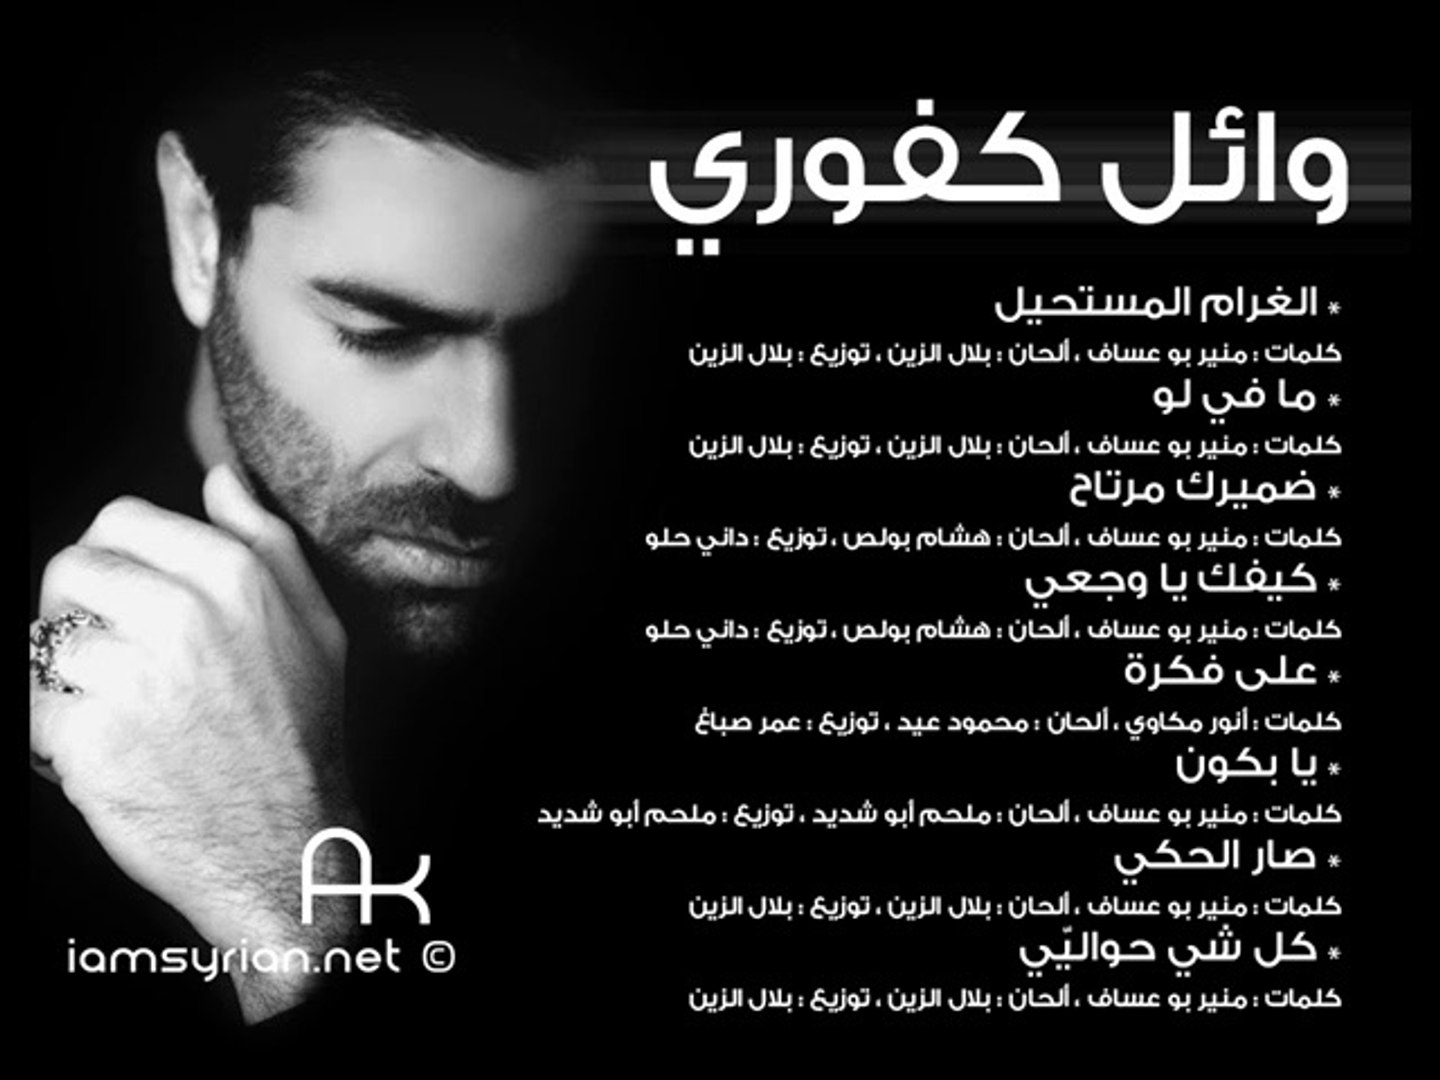 وائل كفوري اغاني جميع اغاني